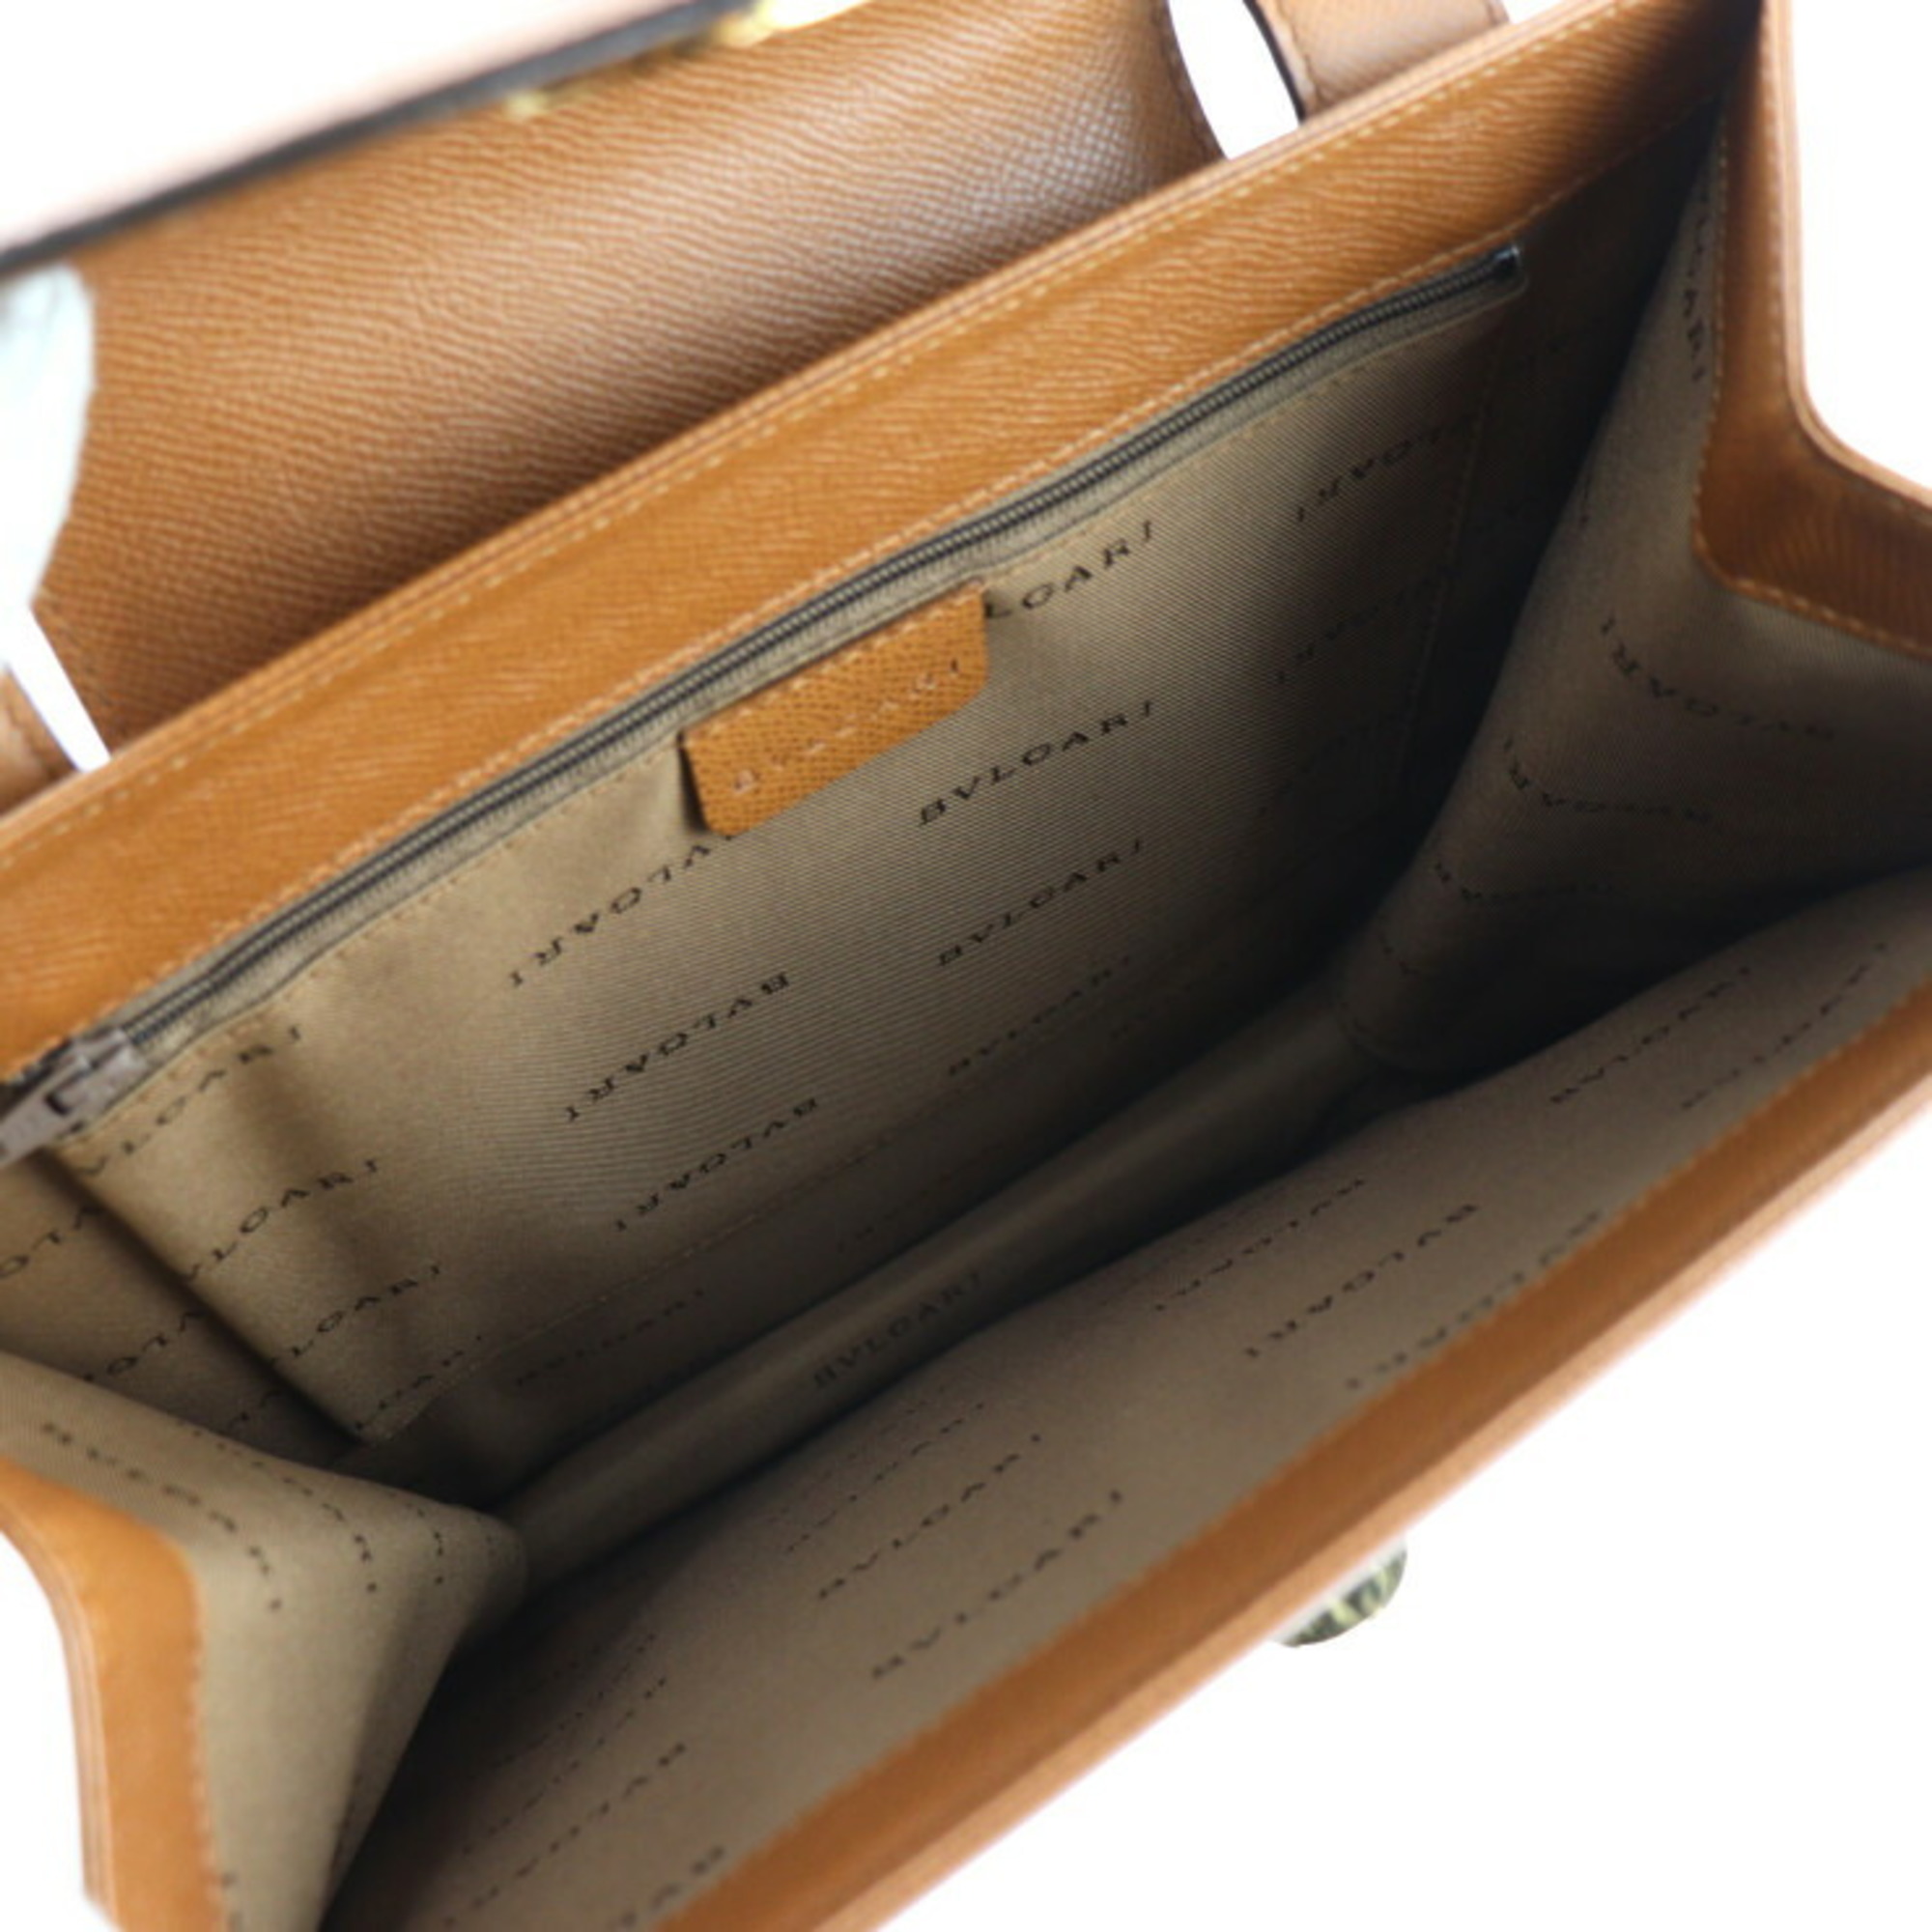 BVLGARI Shoulder Bag Leather Brown Turnlock Tote Handbag